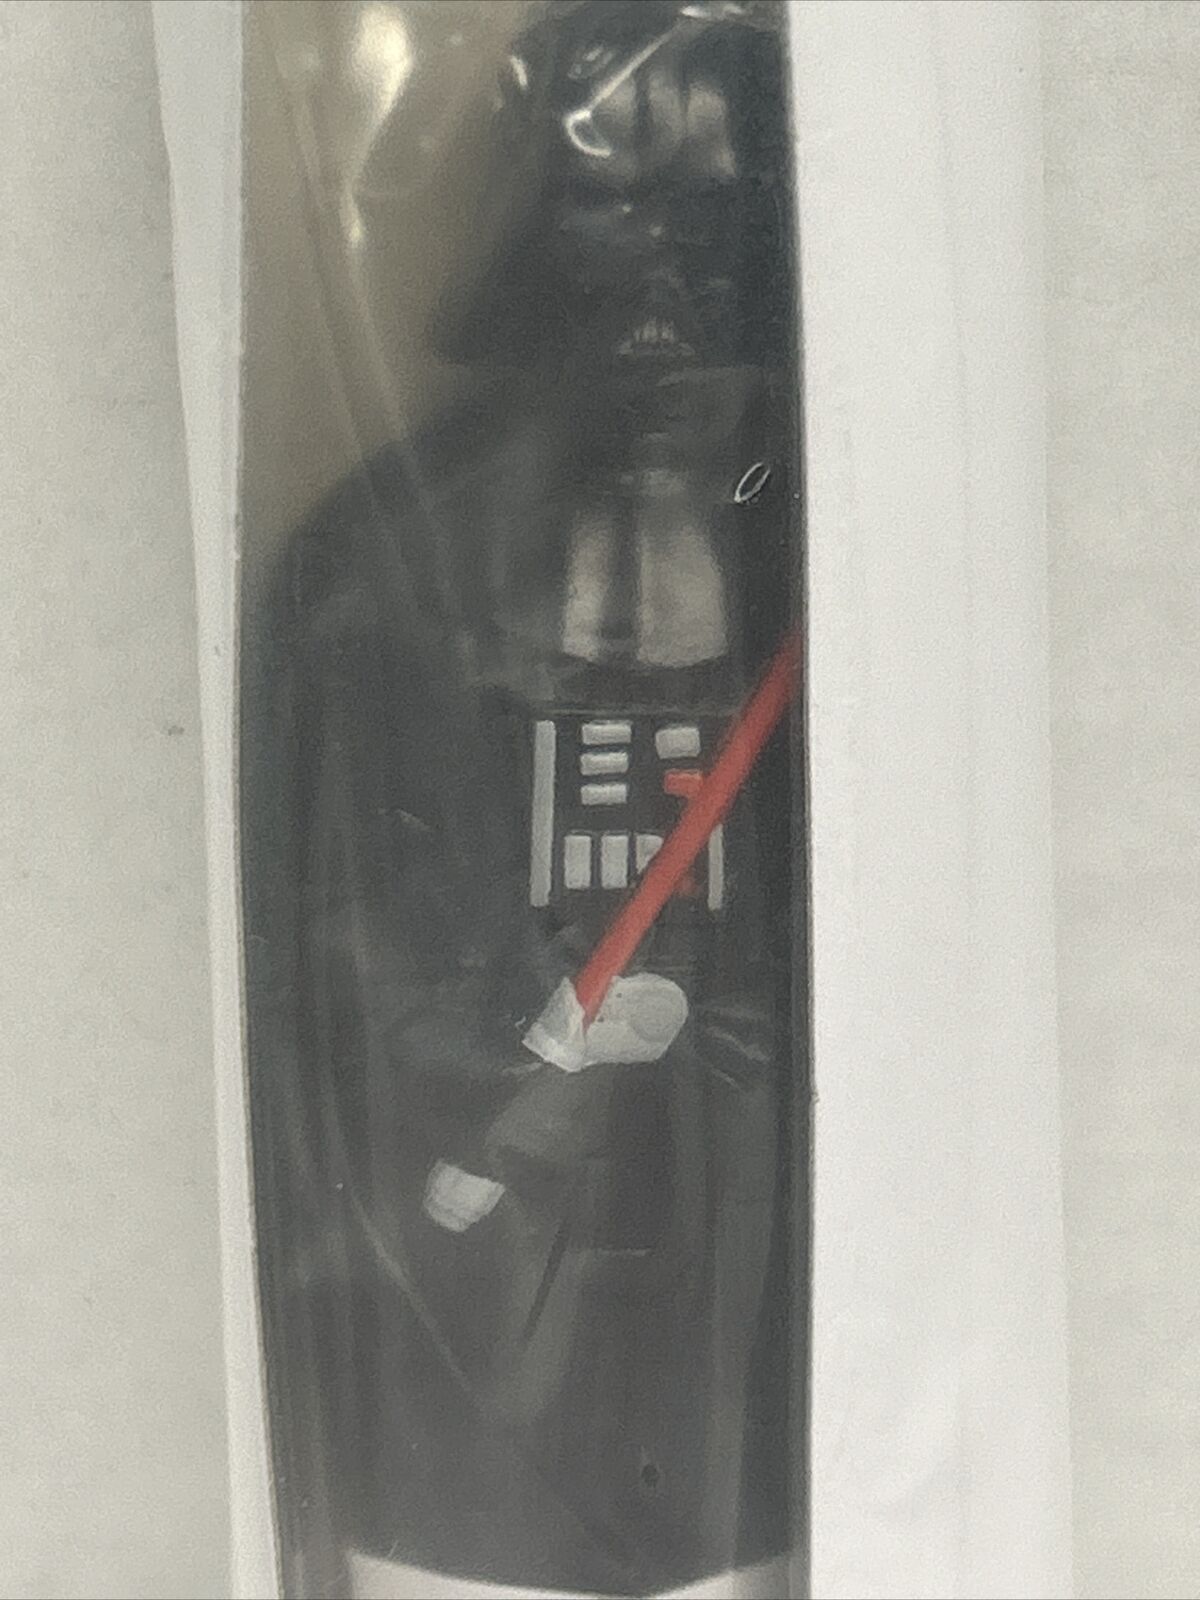  Star Wars Darth Vader General Mills Cereal Prize Pen sealed 